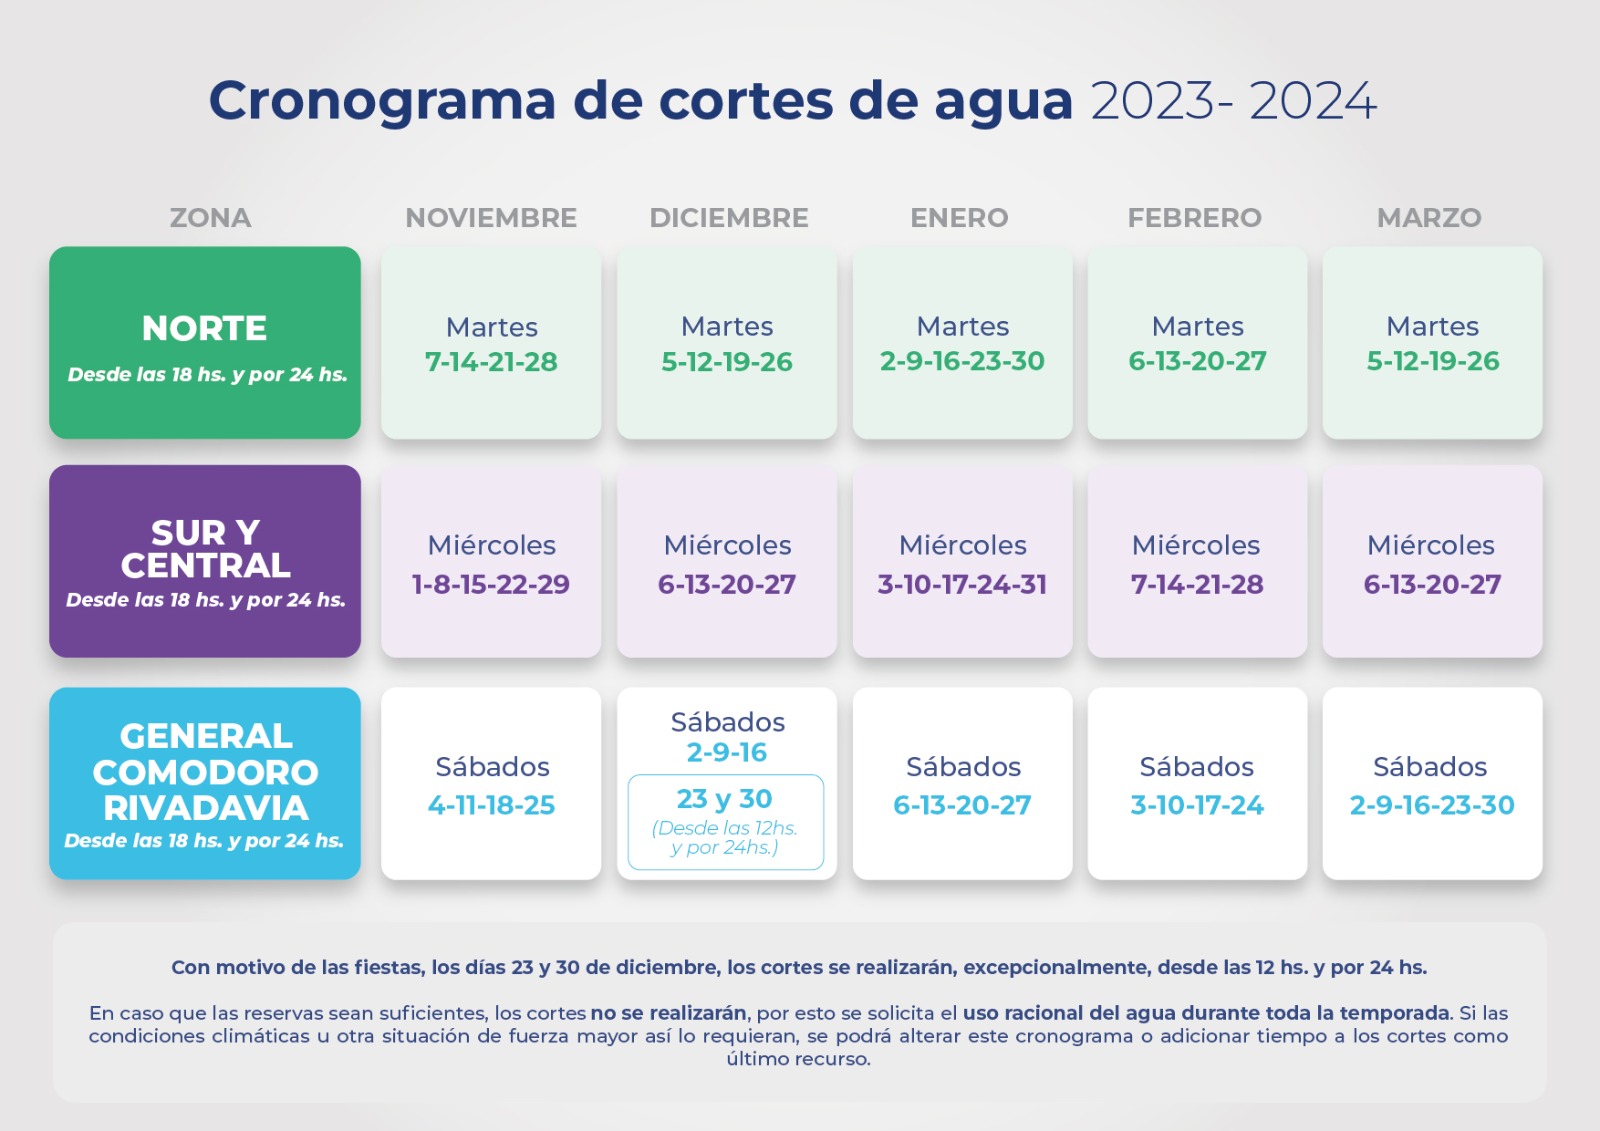 La SCPL lanzó el cronograma de cortes de agua para el verano 2023-2024